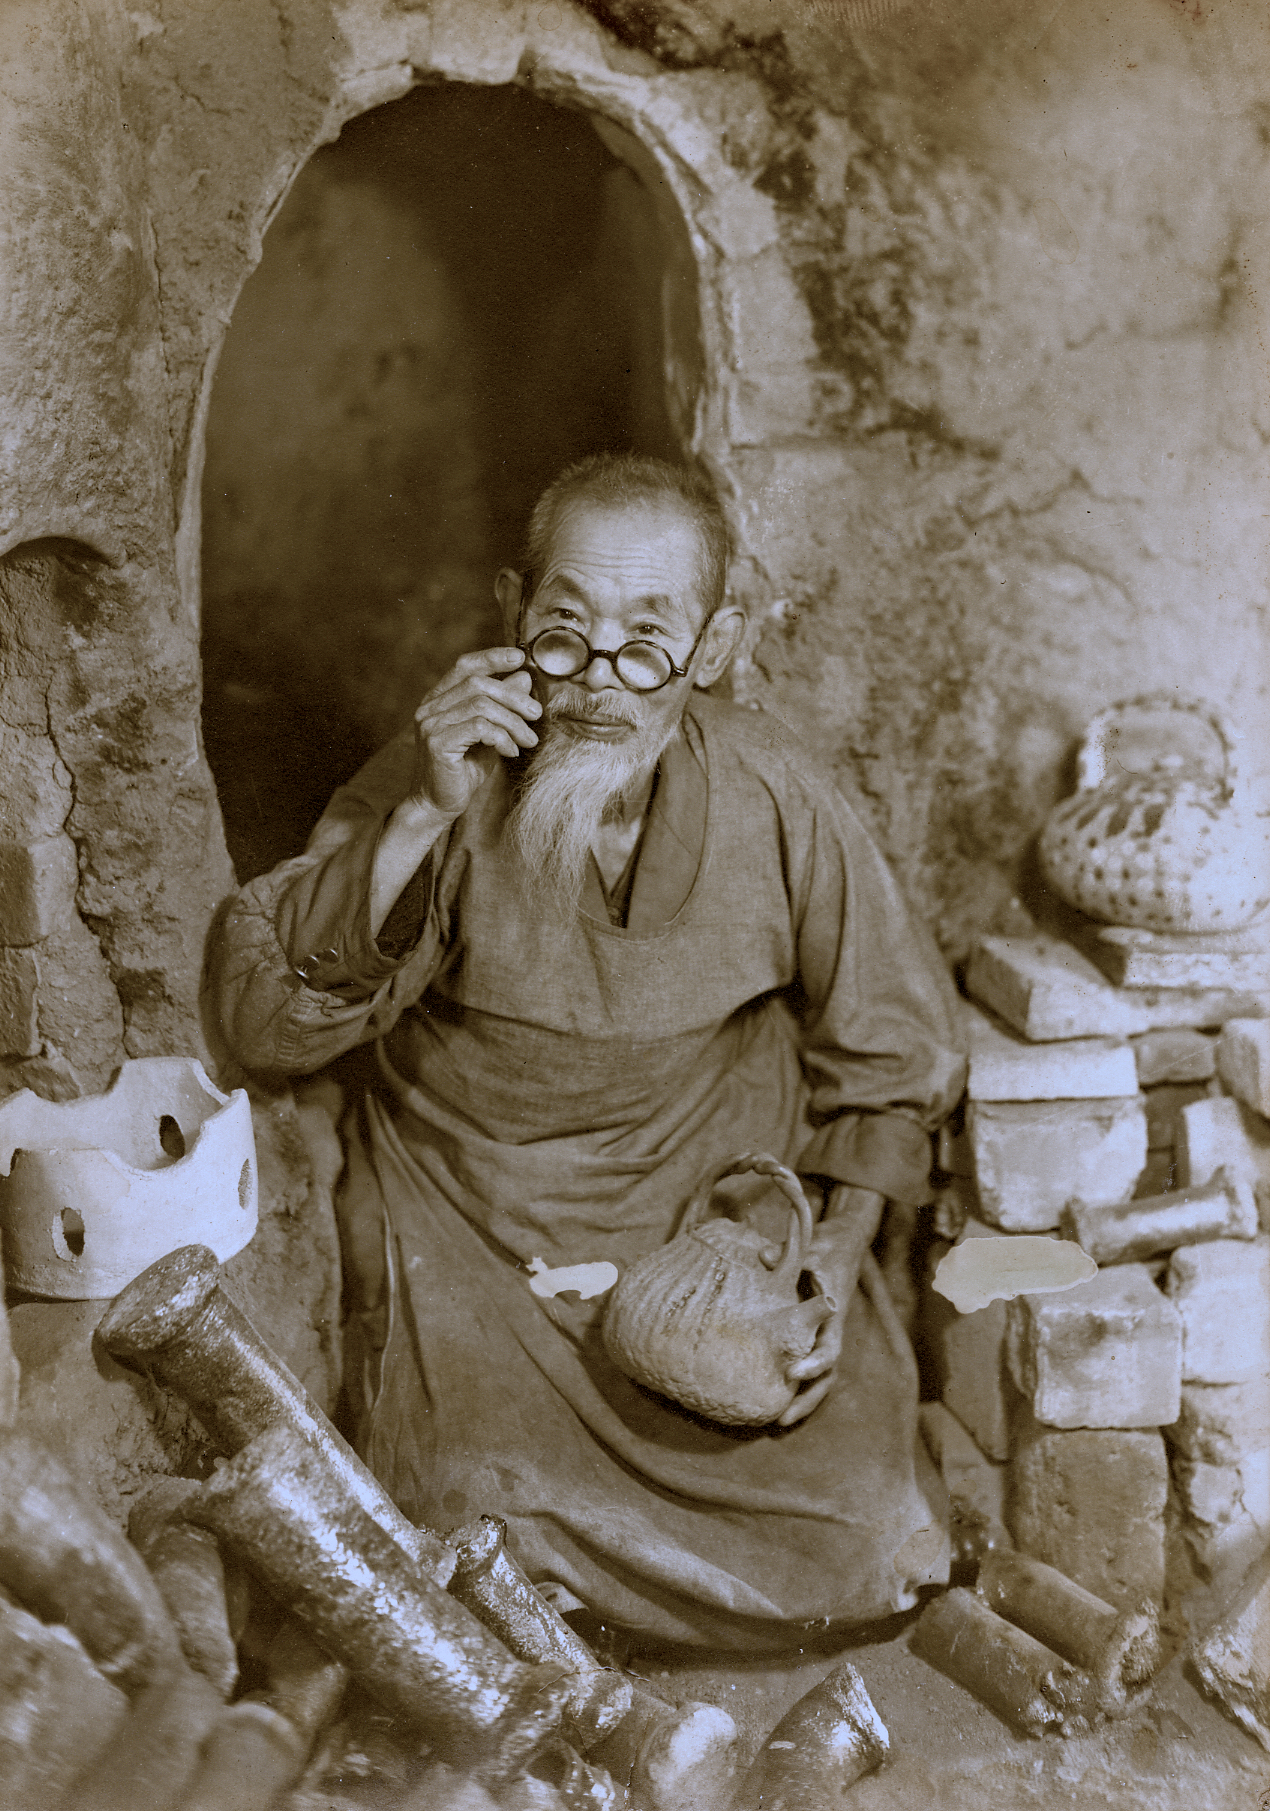 Jinichi Nakahara, potter of Nagasaki